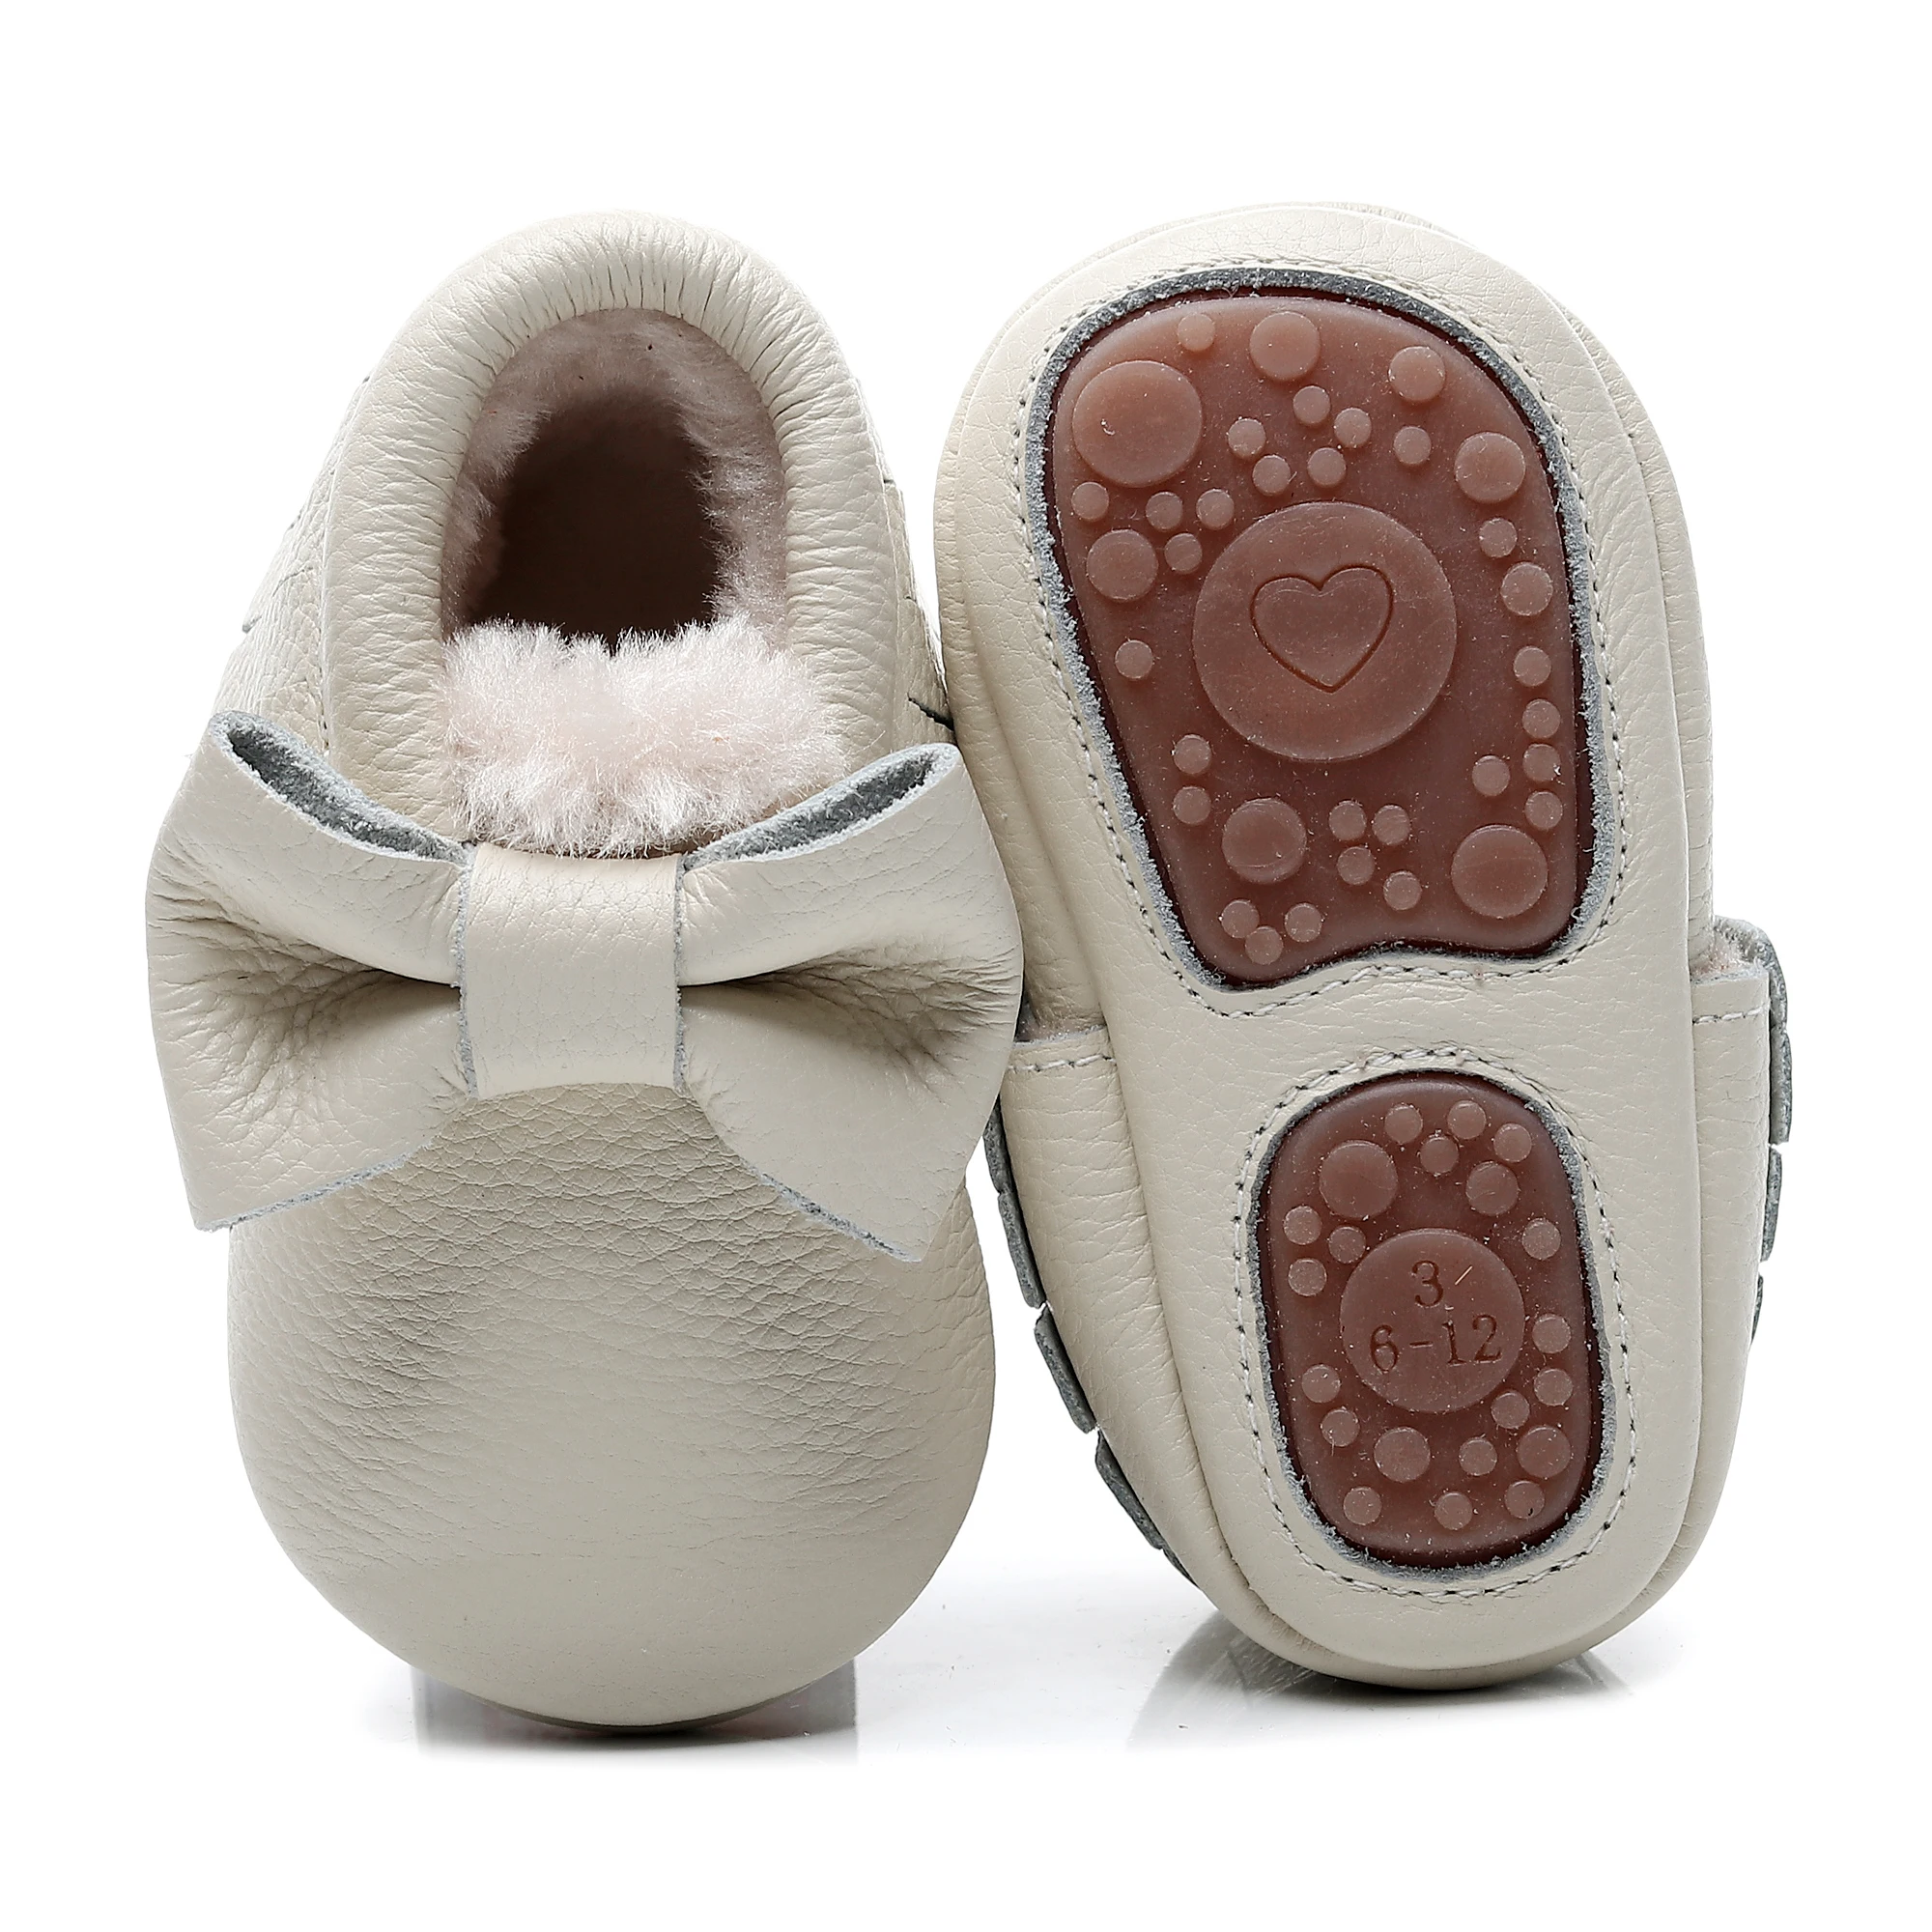 prewalker du cuir chaussures de bébé bowknot fond mou bottes d'hiver chaud 